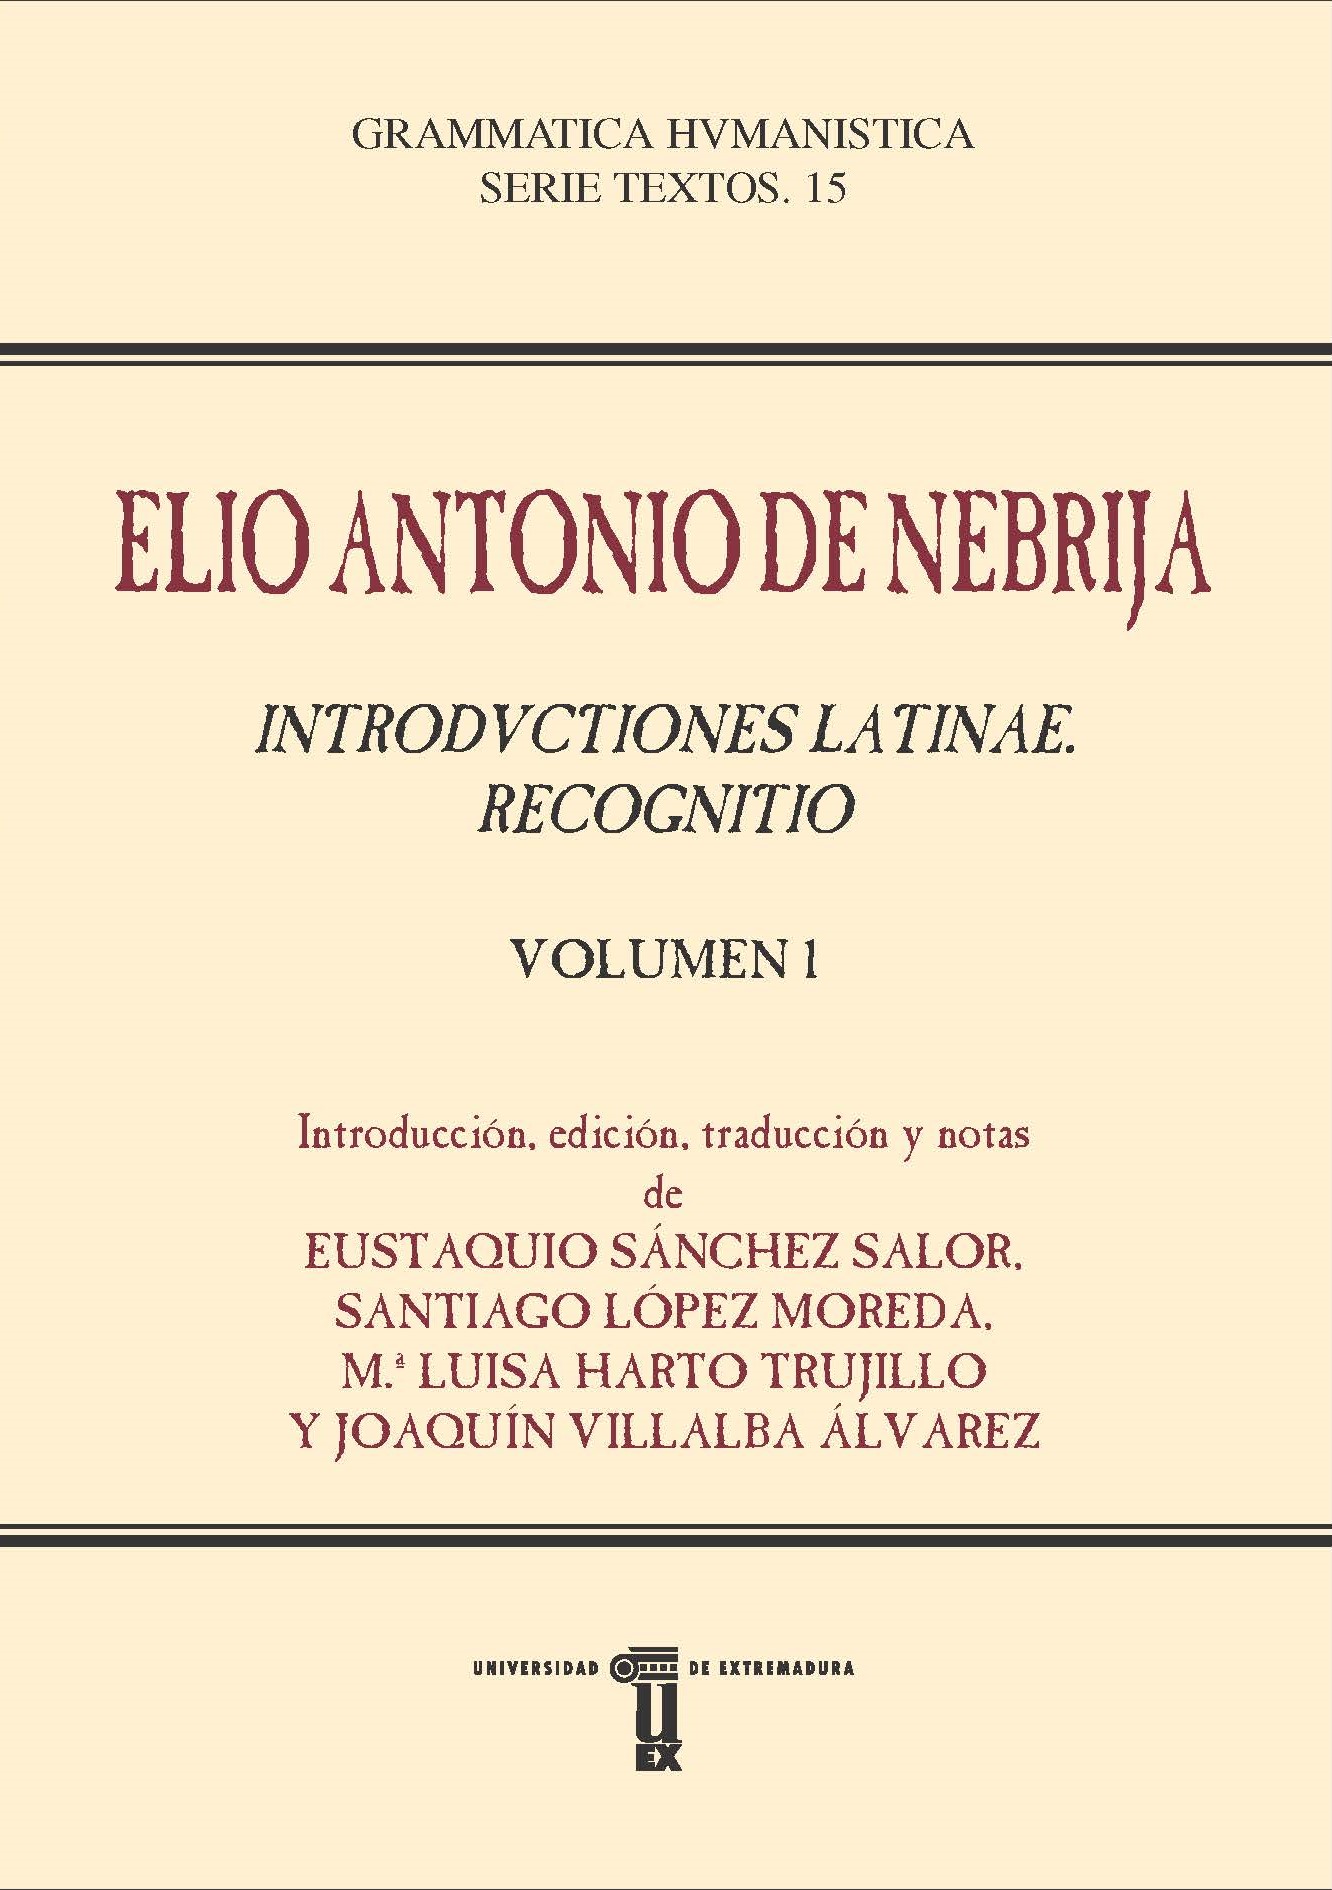 Introductiones latinae